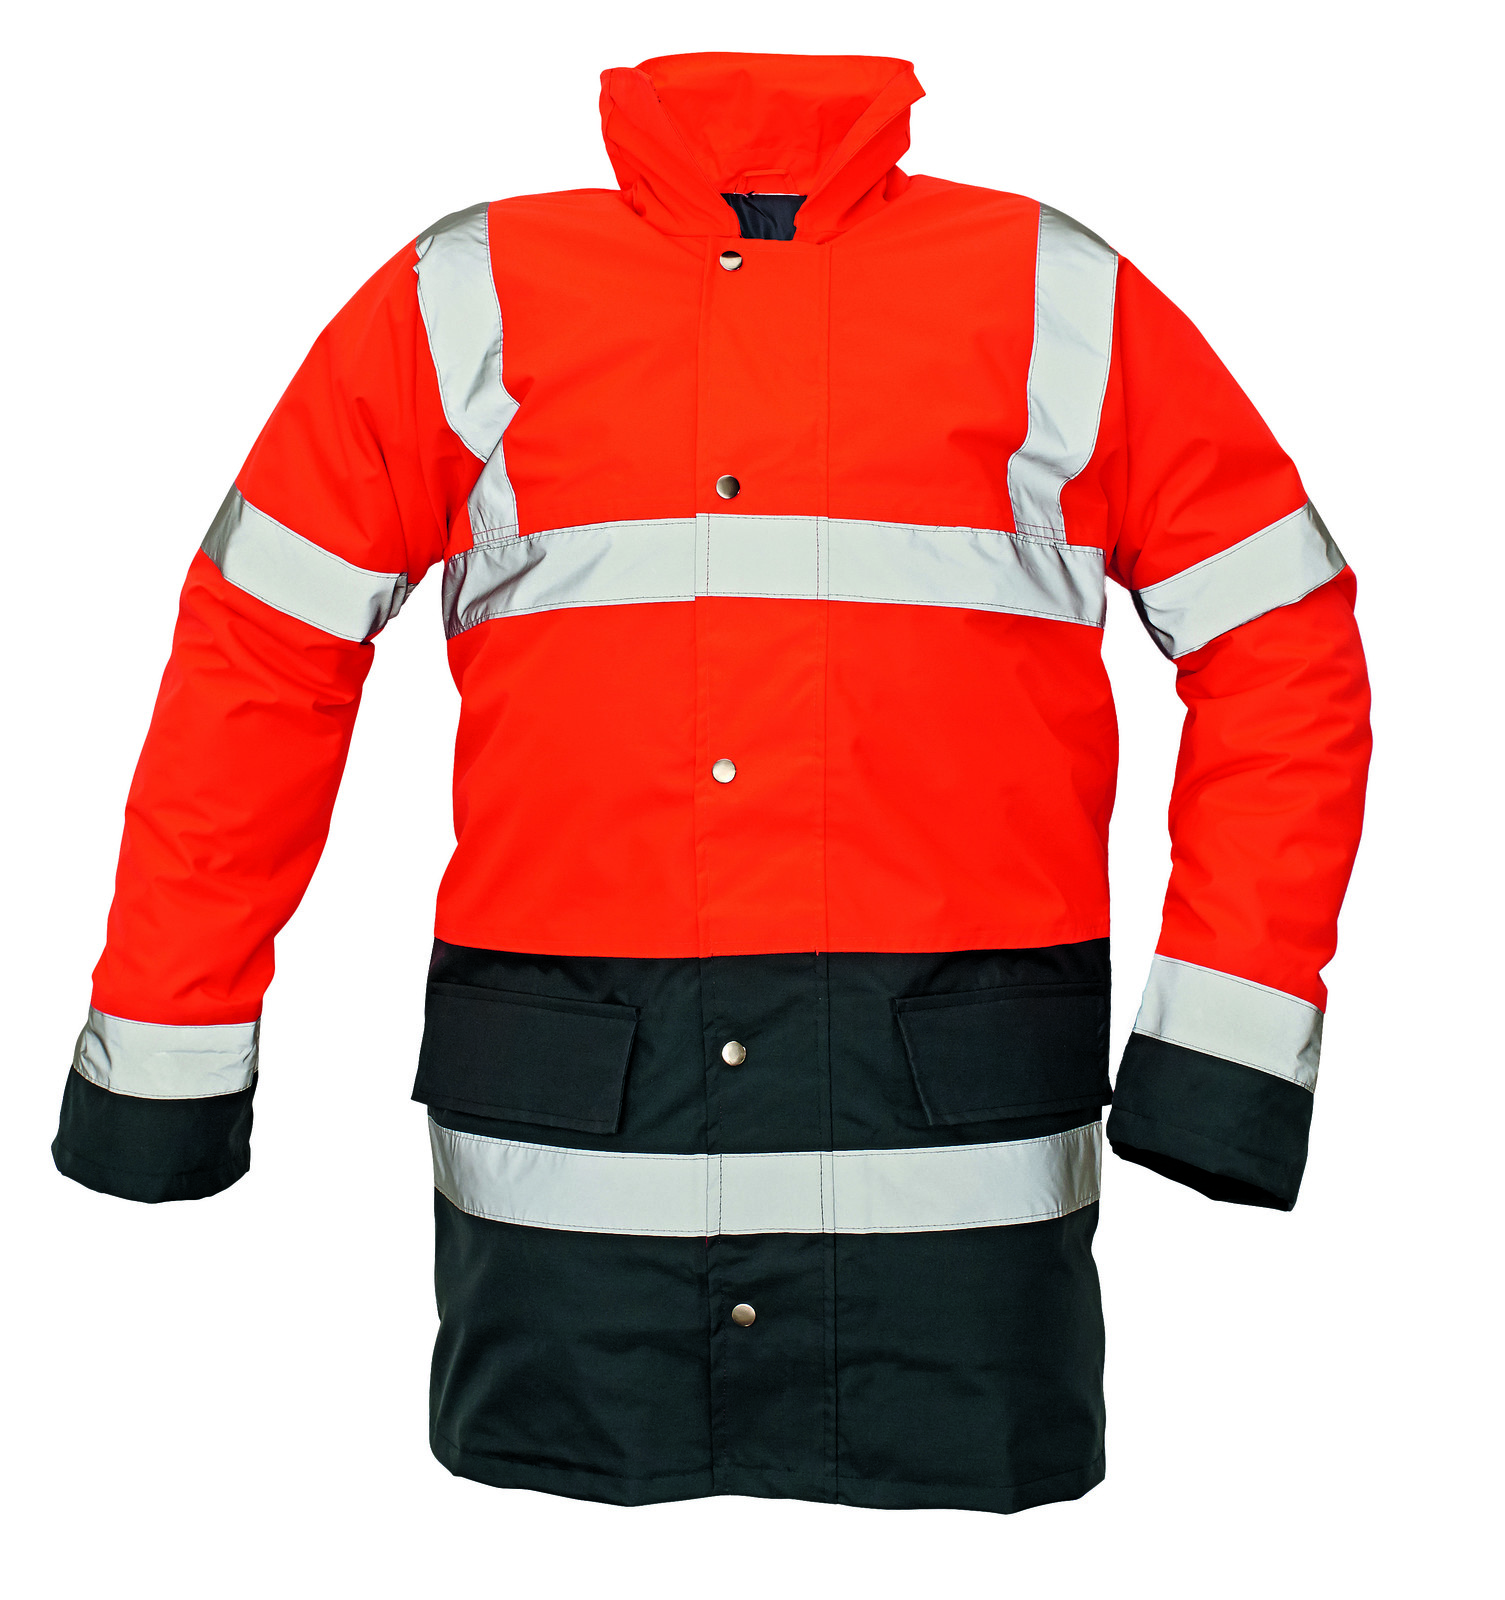 Ľahká zateplená reflexná bunda Sefton - veľkosť: L, farba: červená/navy